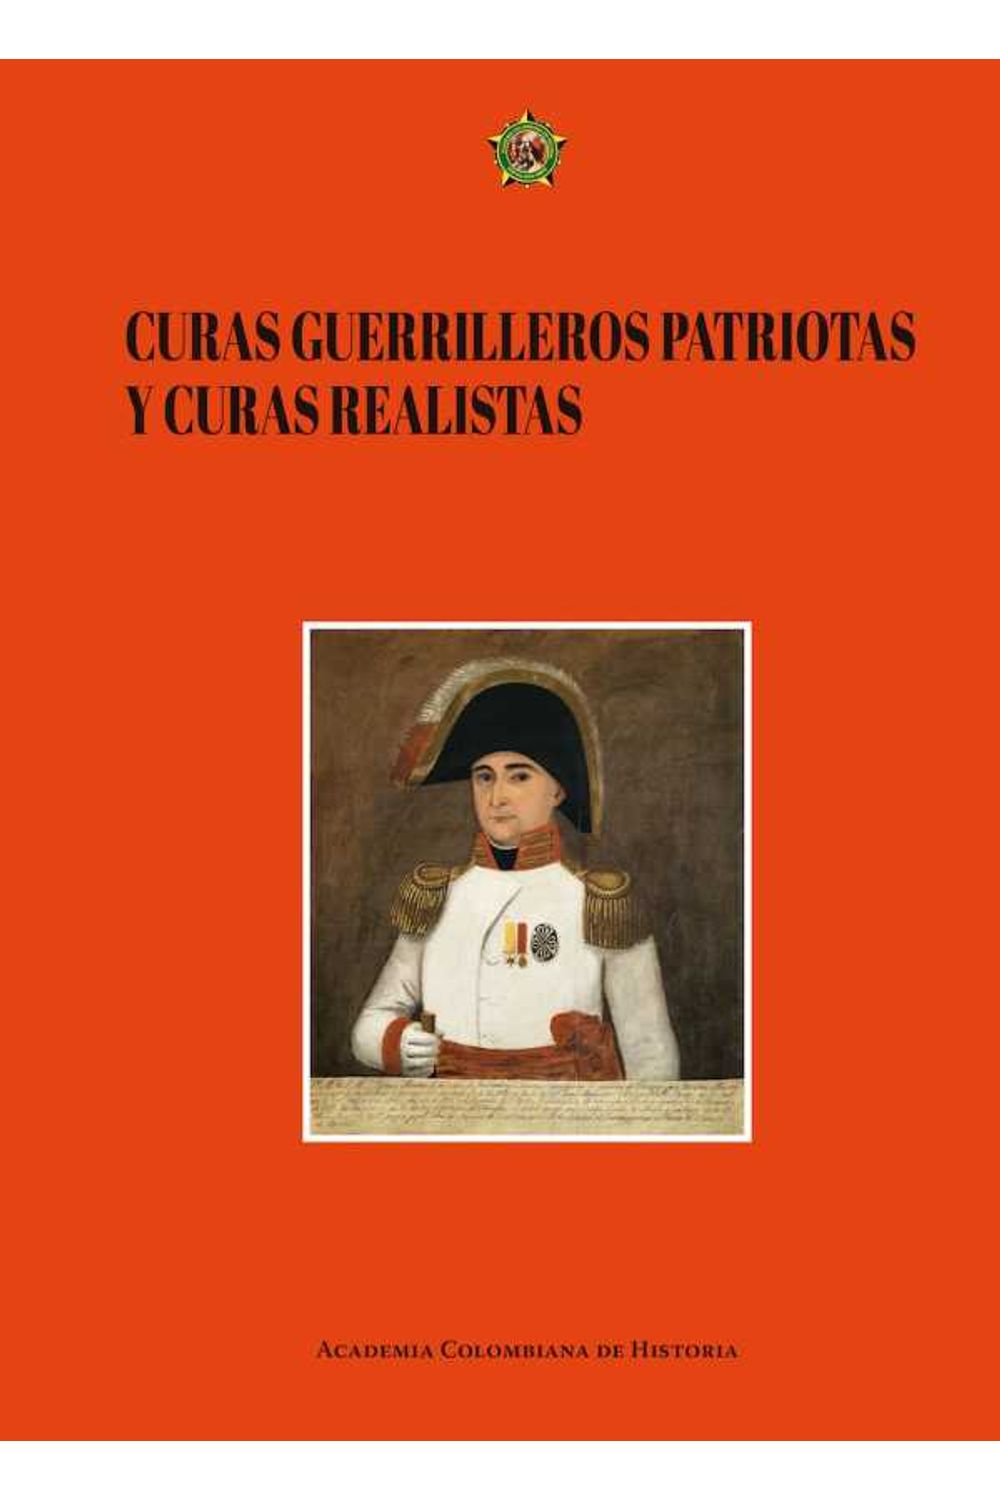 bw-curas-guerrilleros-patriotas-y-curas-realistas-academia-colombiana-de-historia-9789585154261